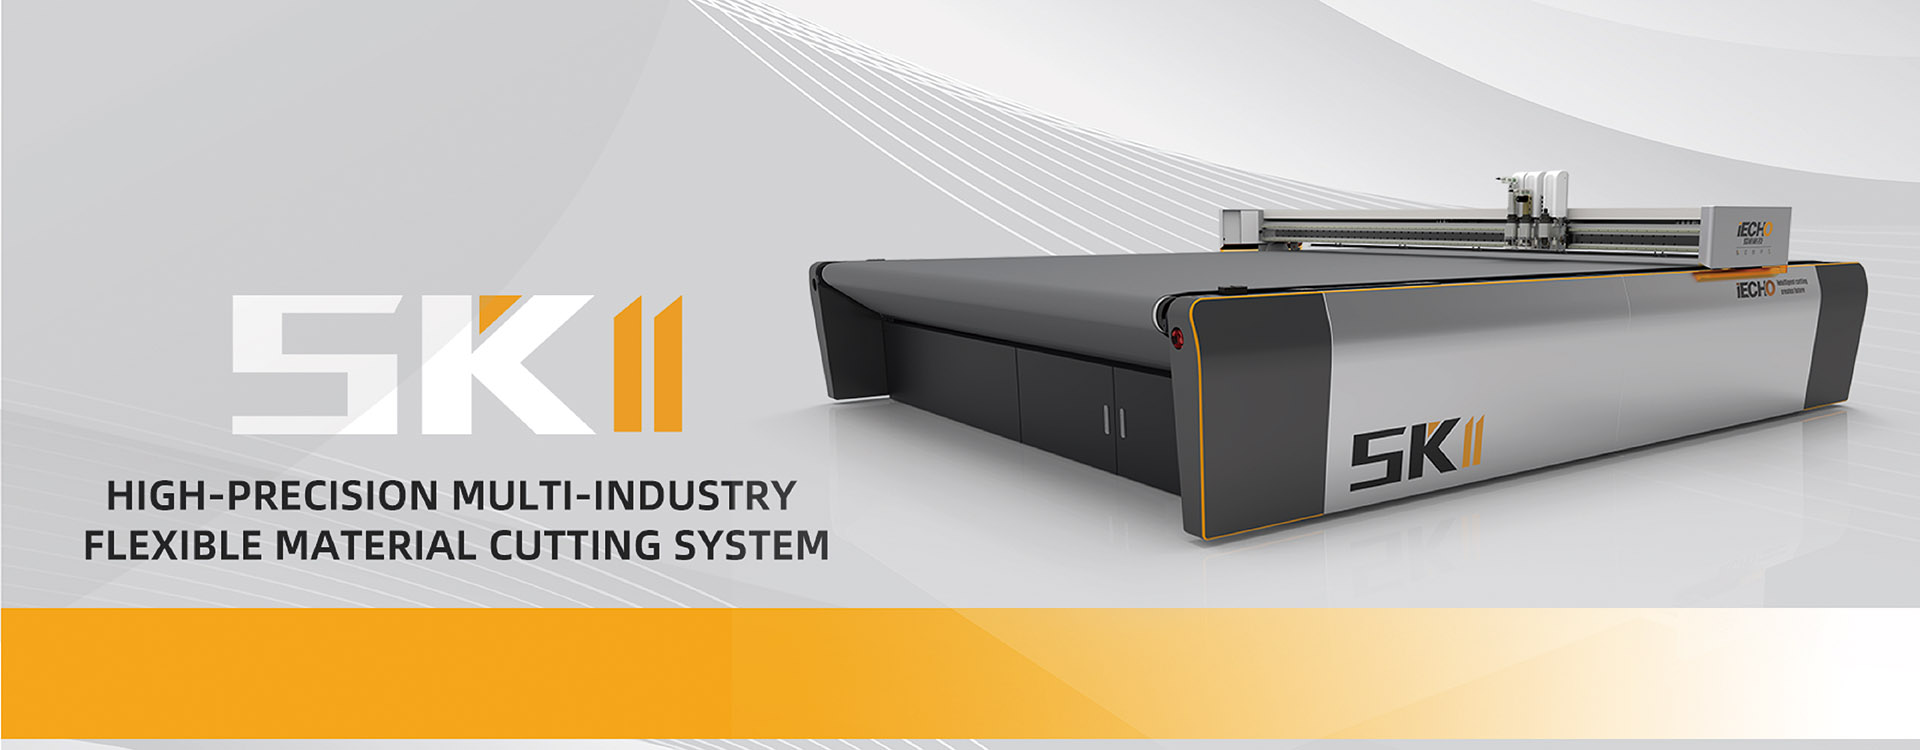 SK2 Sistem pemotongan bahan fleksibel pelbagai industri berketepatan tinggi